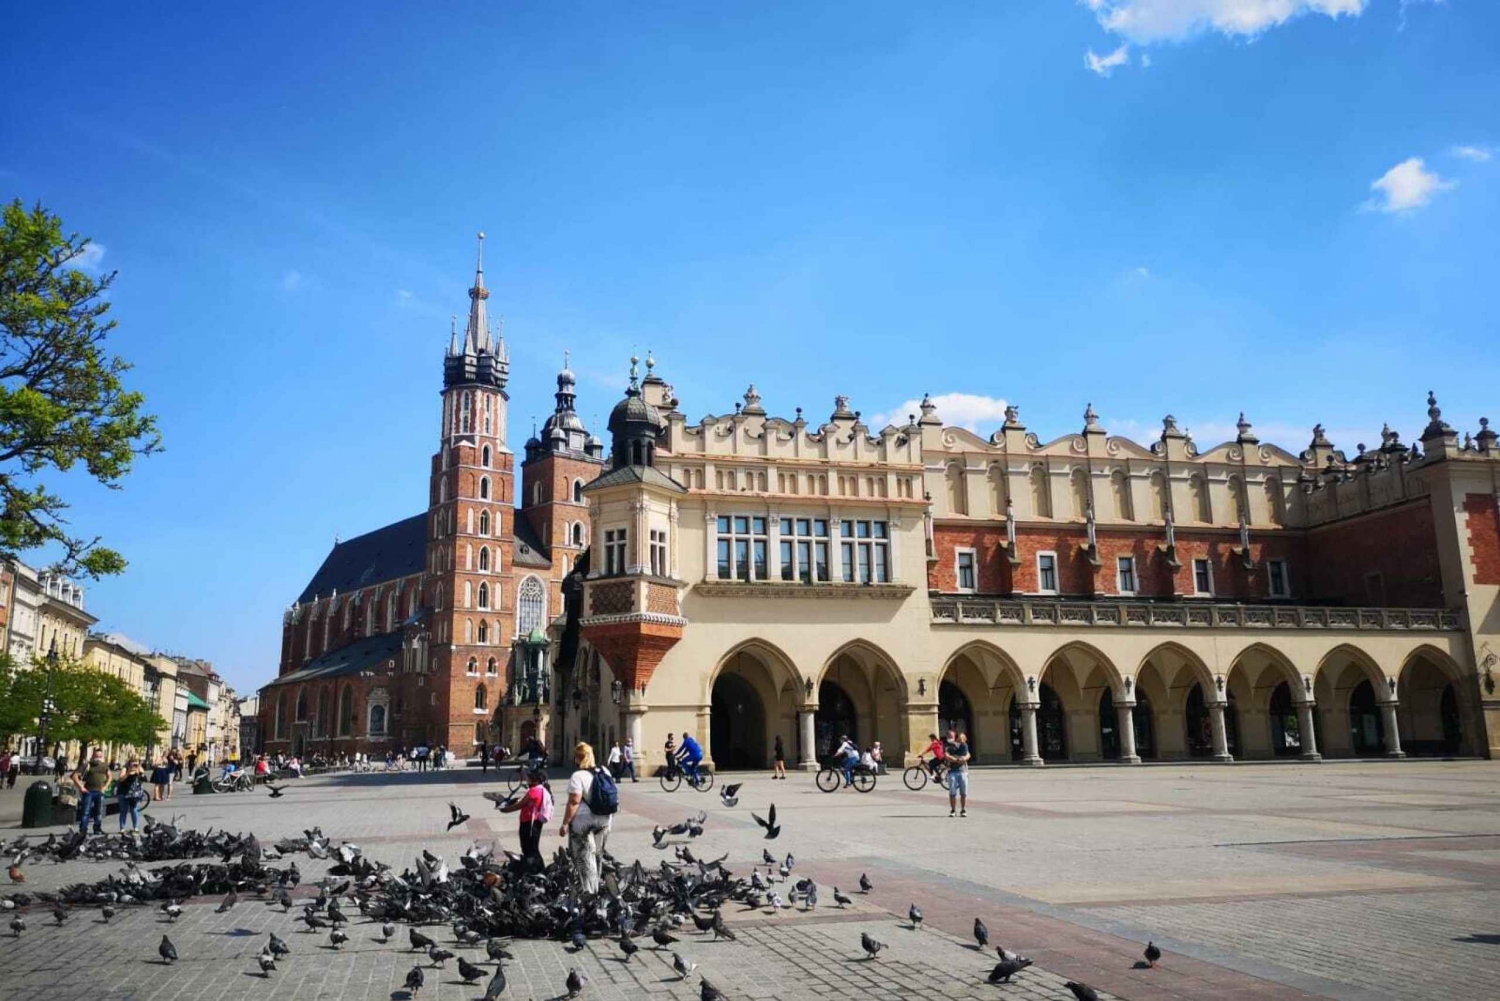 Warszawa: Krakow og Wieliczka saltgruvetur